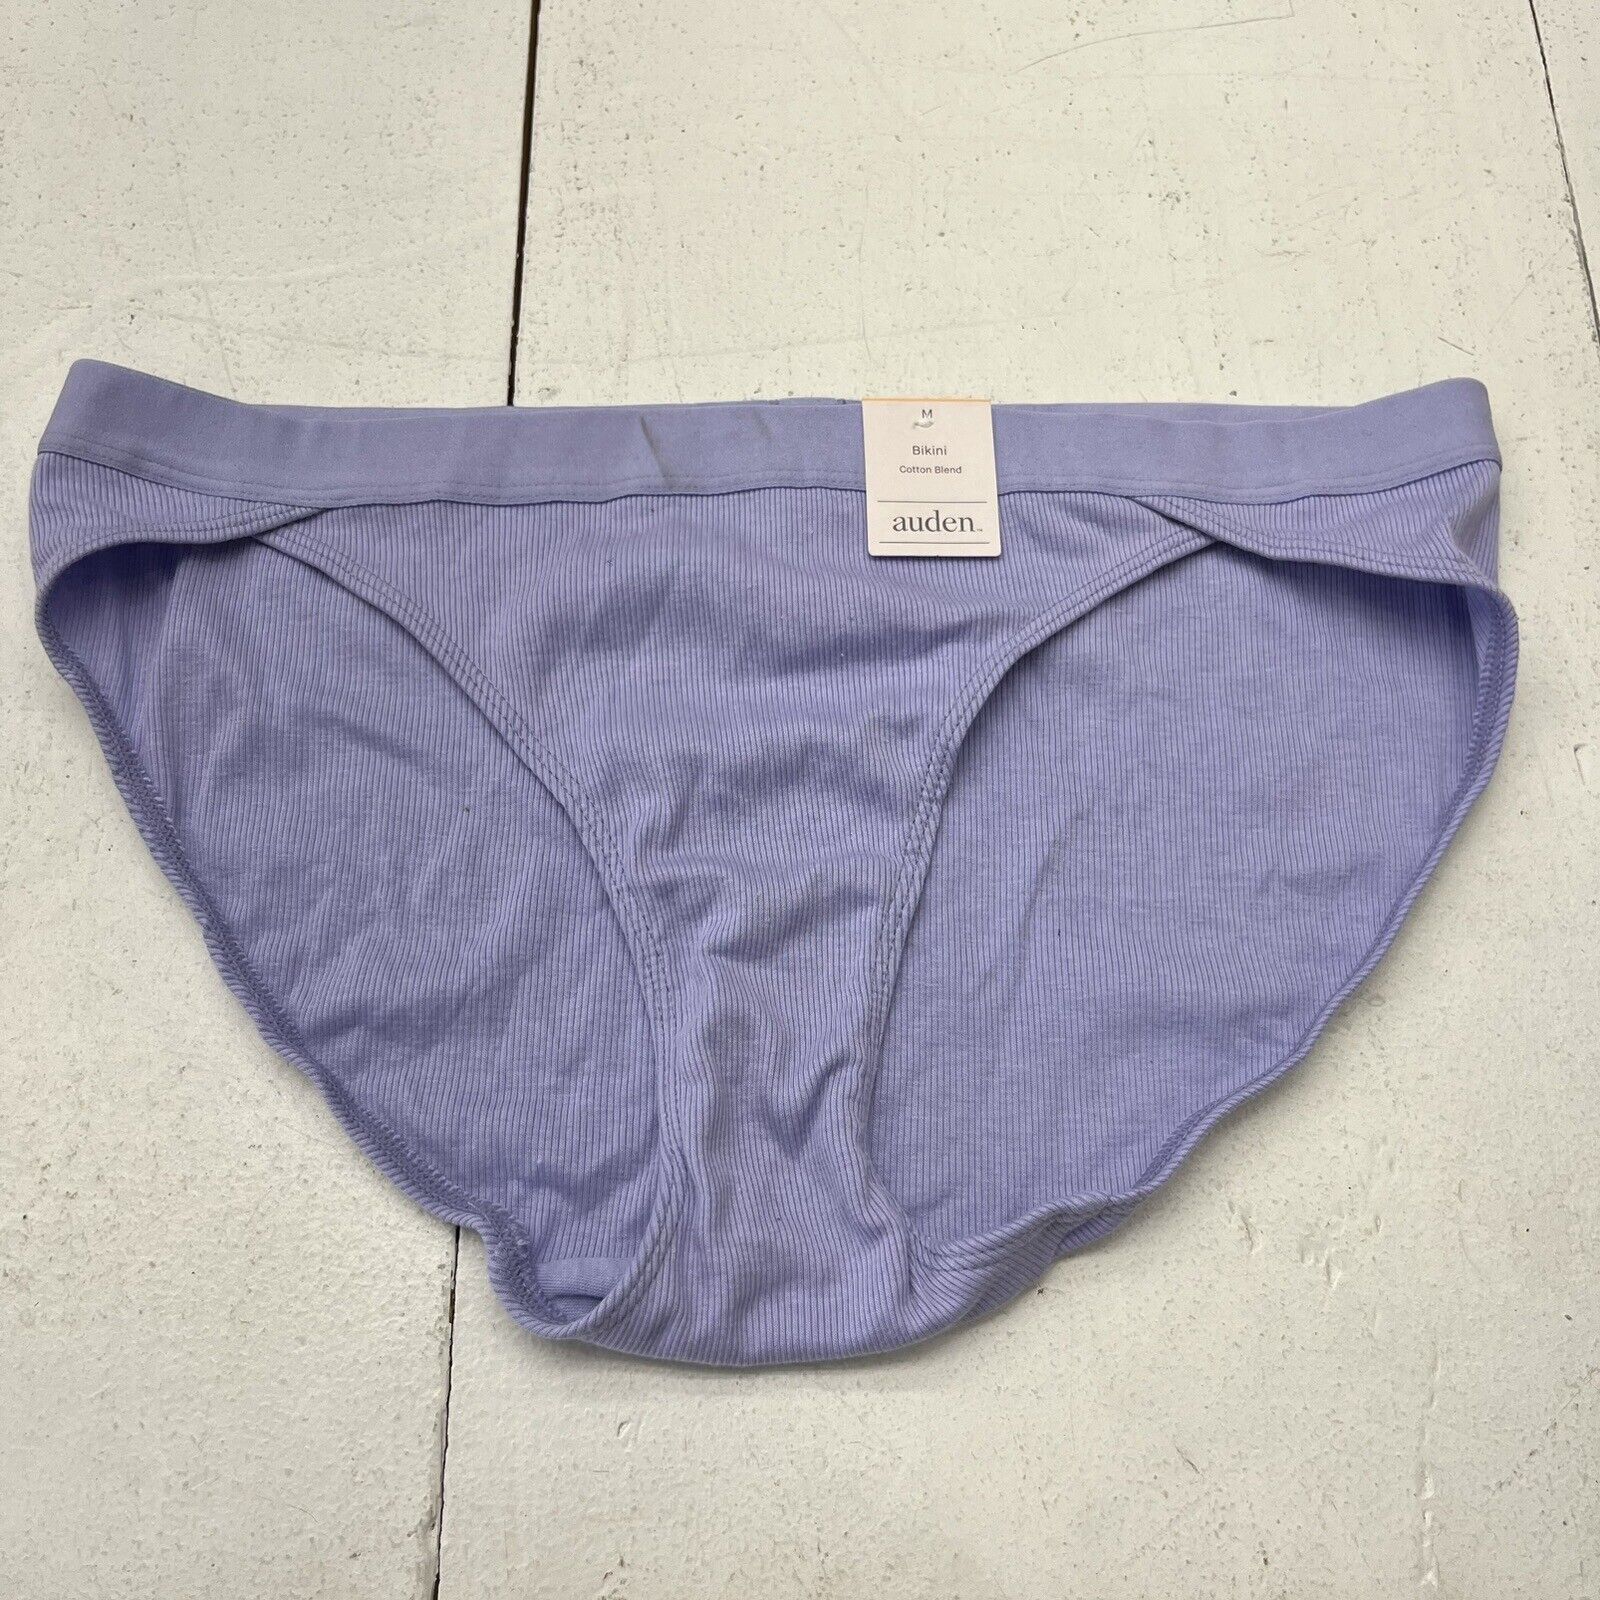 Auden Green Mesh Bikini Underwear Women's Size Medium NEW - beyond exchange